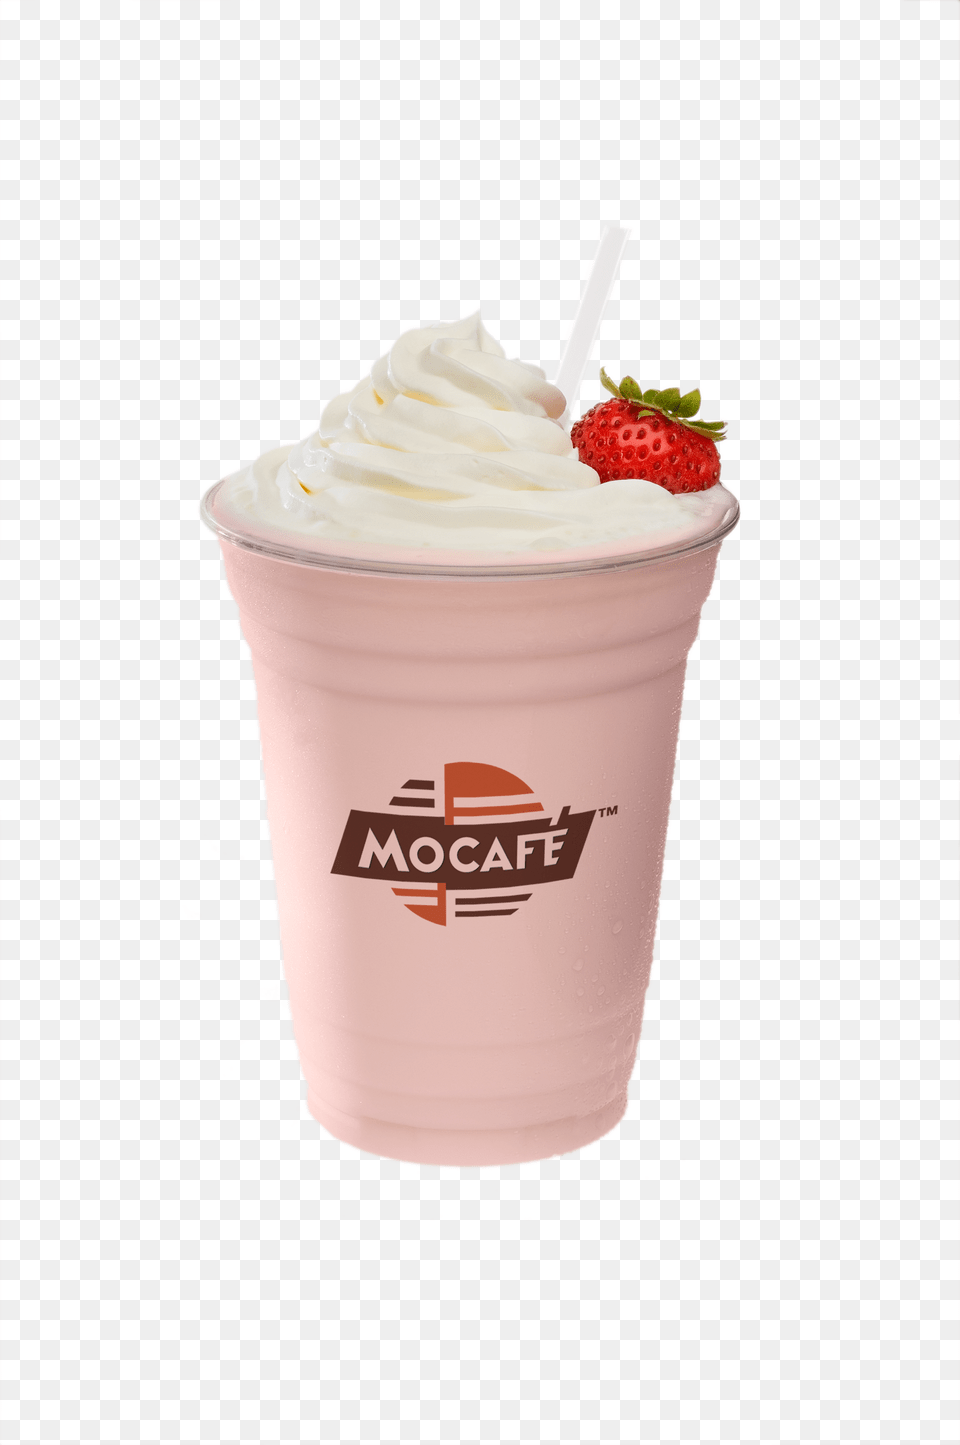 Mocafe Strawberry Creme Zenfreeze Smoothie Mocafe Blended Ice Frappes 3 Lb Bulk Bag Vanilla, Cream, Dessert, Food, Frozen Yogurt Png Image